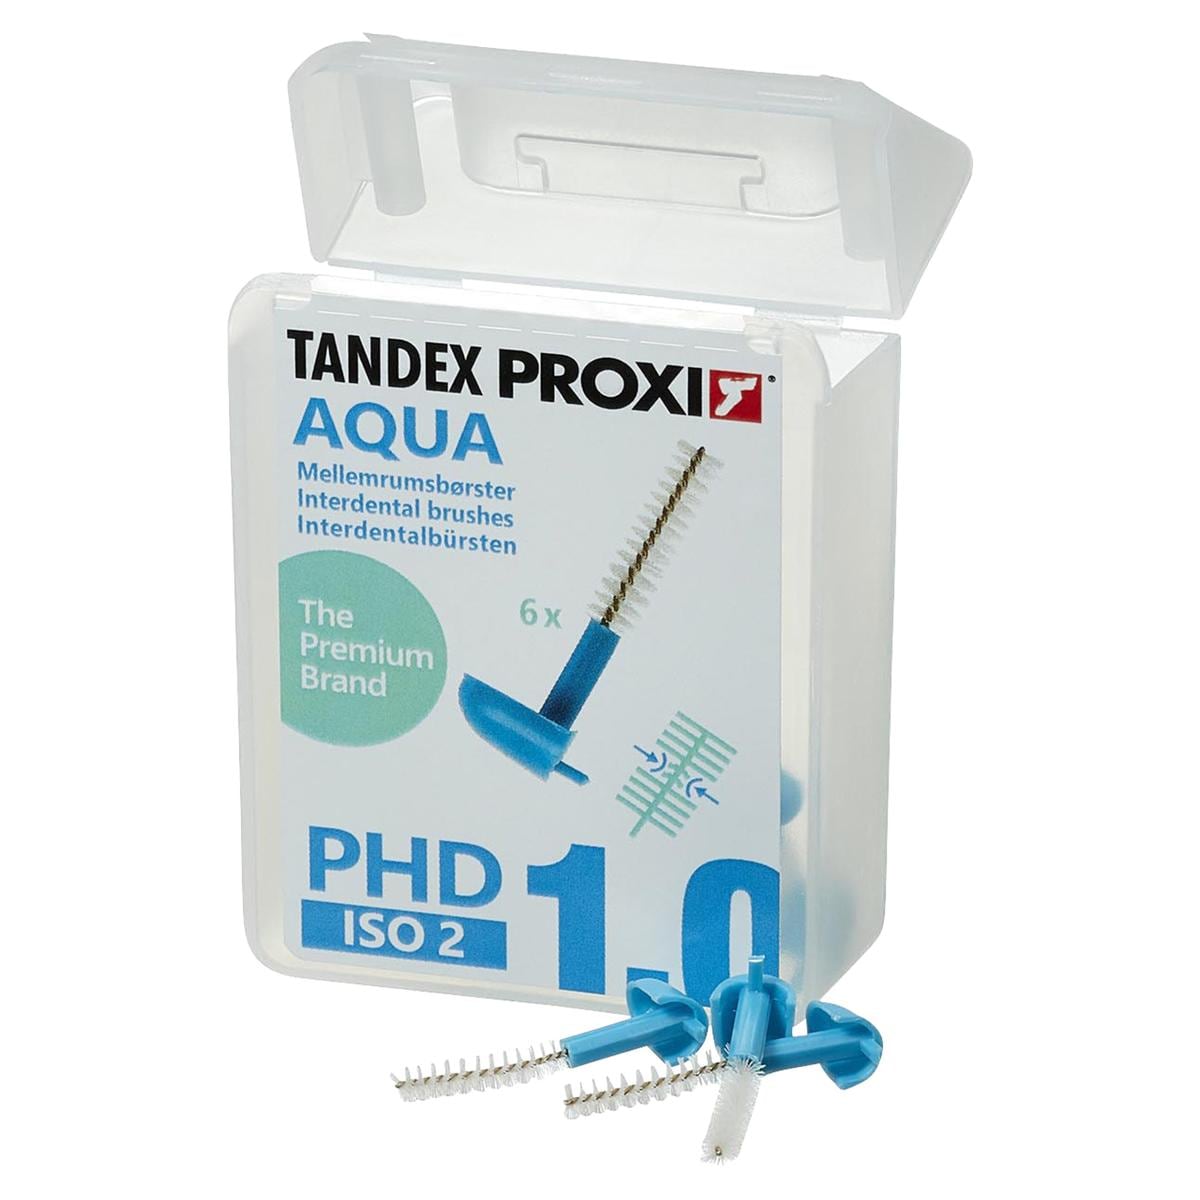 PROXI Interdentalbürse - Aqua, ISO 2, PHD 1.0, Packung 6 Stück